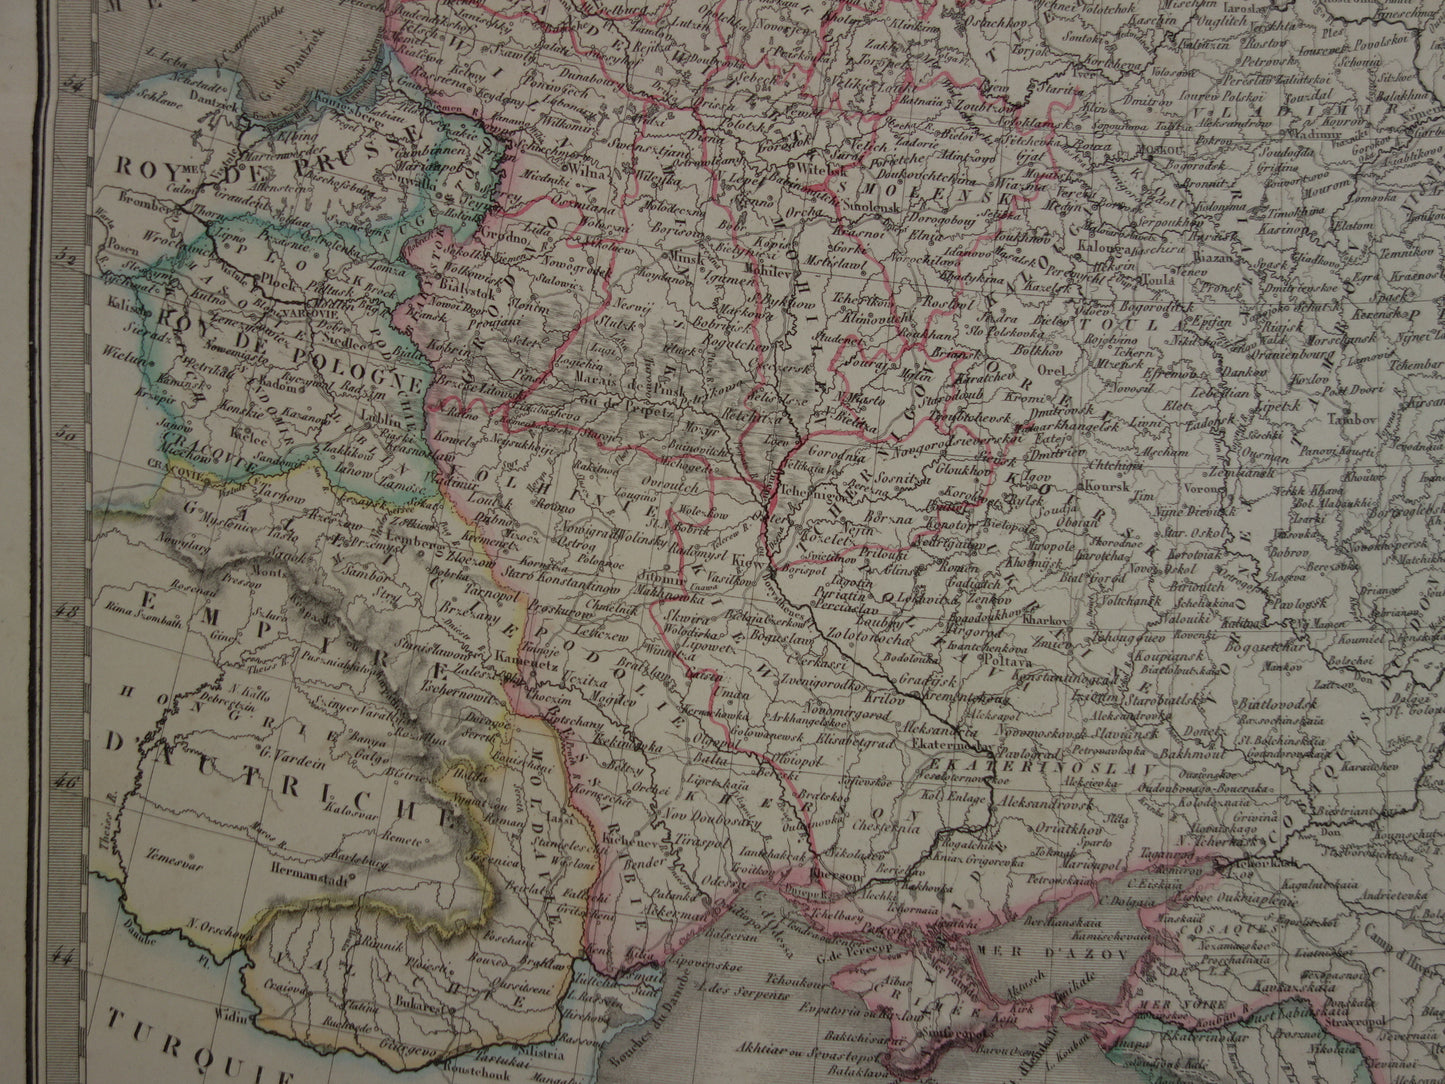 Oude kaart van Europees Rusland uit 1851 originele grote antieke Franse landkaart Russische Rijk in Europa